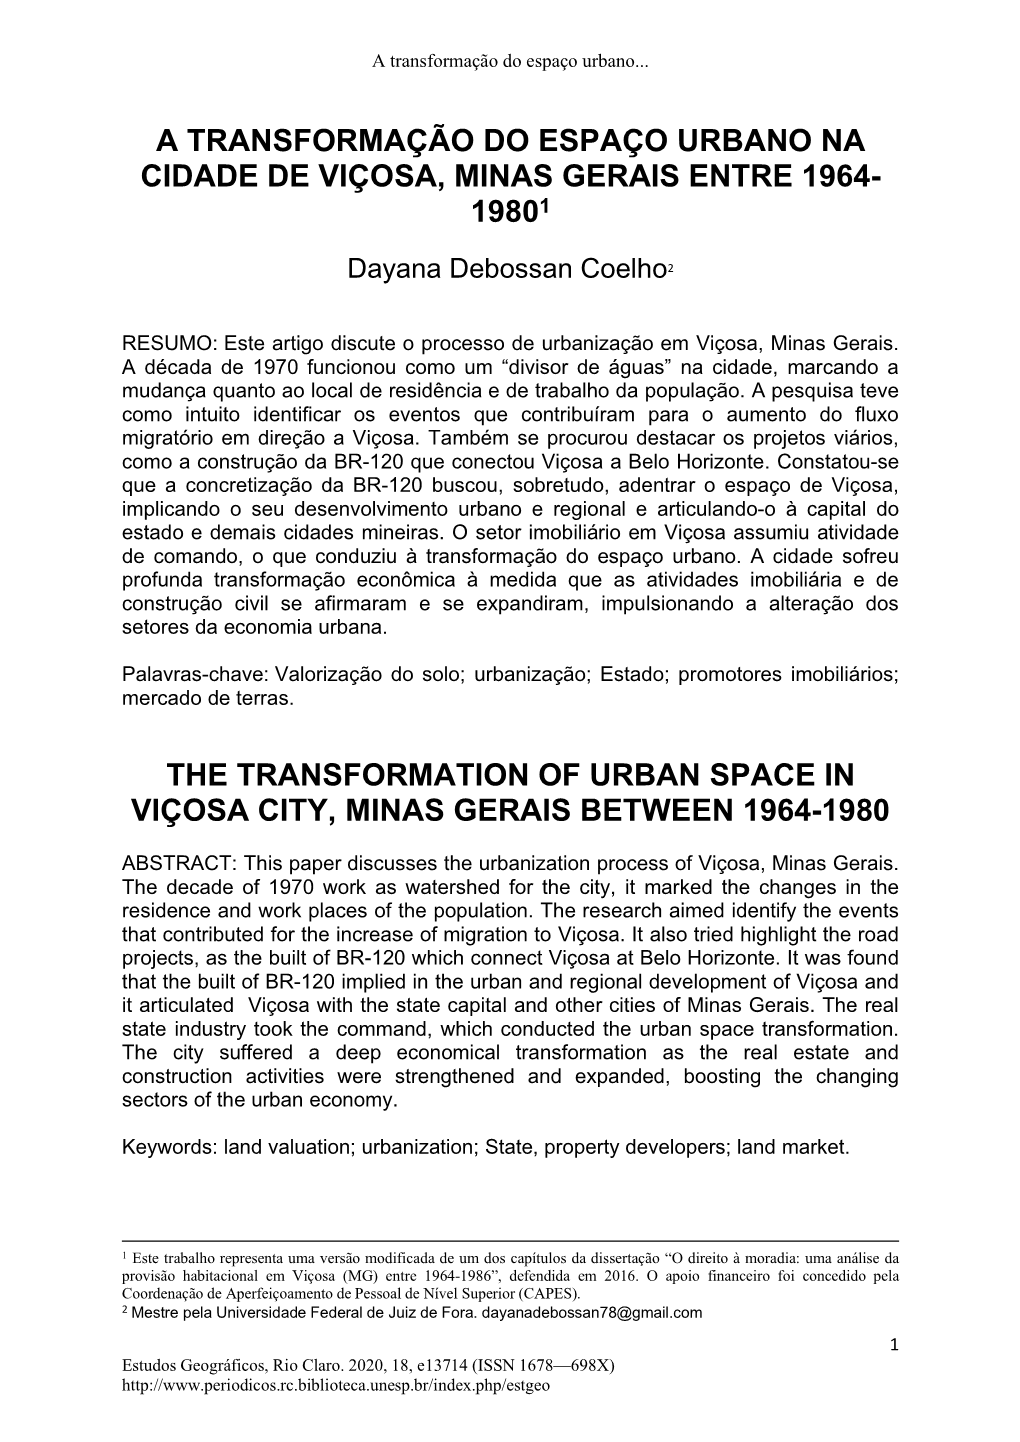 A Transformação Do Espaço Urbano Na Cidade De Viçosa, Minas Gerais Entre 1964- 19801